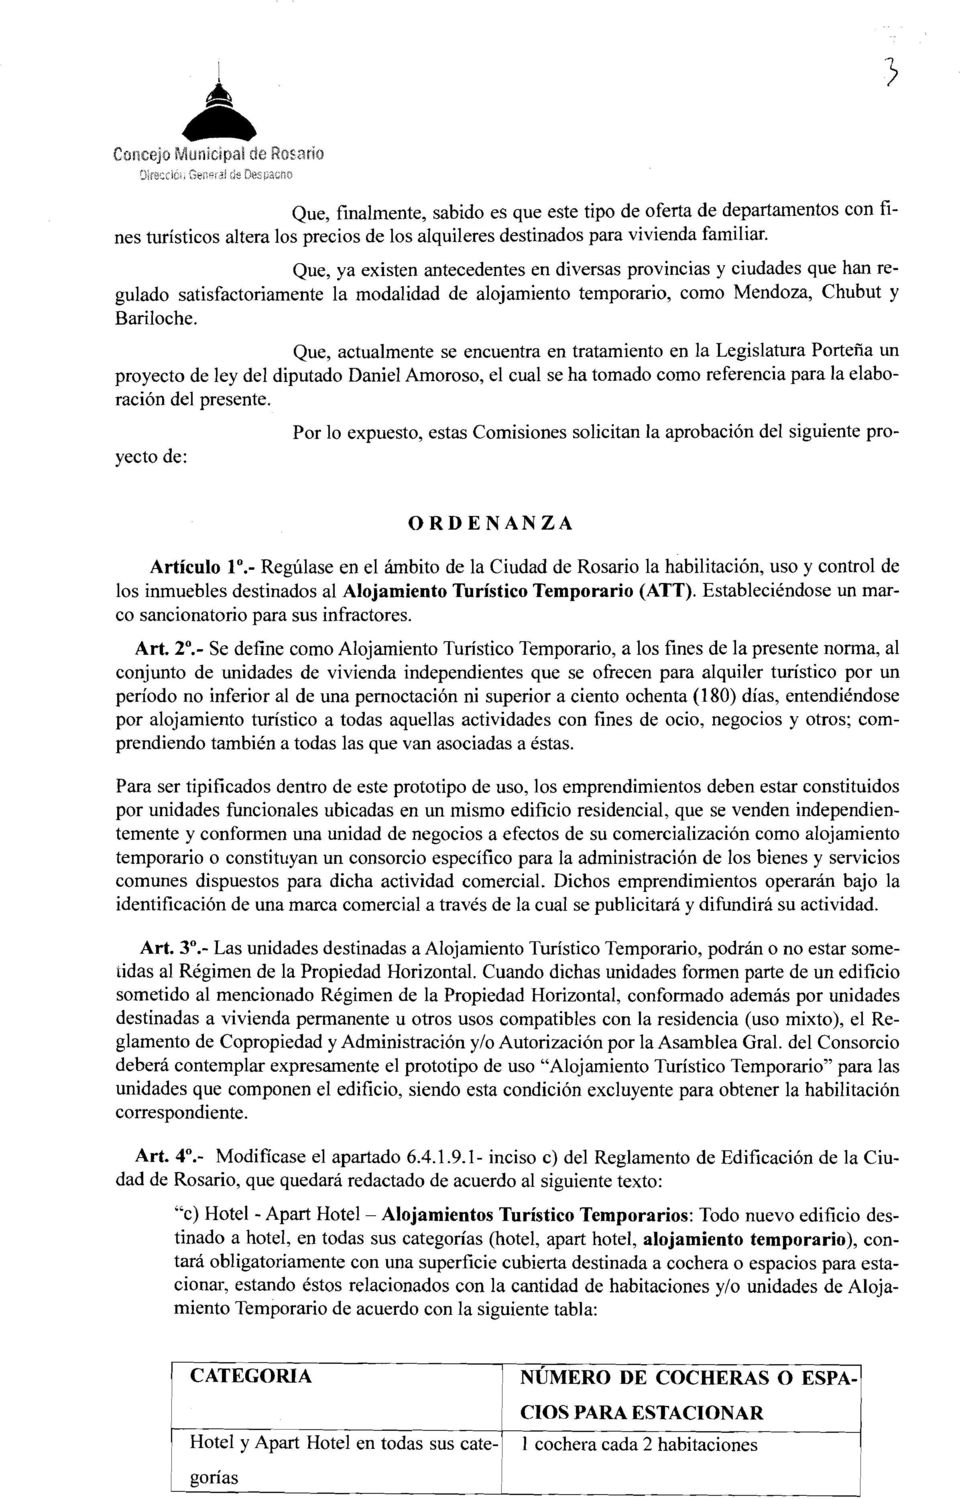 Que, actualmente se encuentra en tratamiento en la Legislatura Portefia un proyecto de ley del diputado Daniel Amoroso, el cual se ha tomado como referencia para la elaboration del presente.